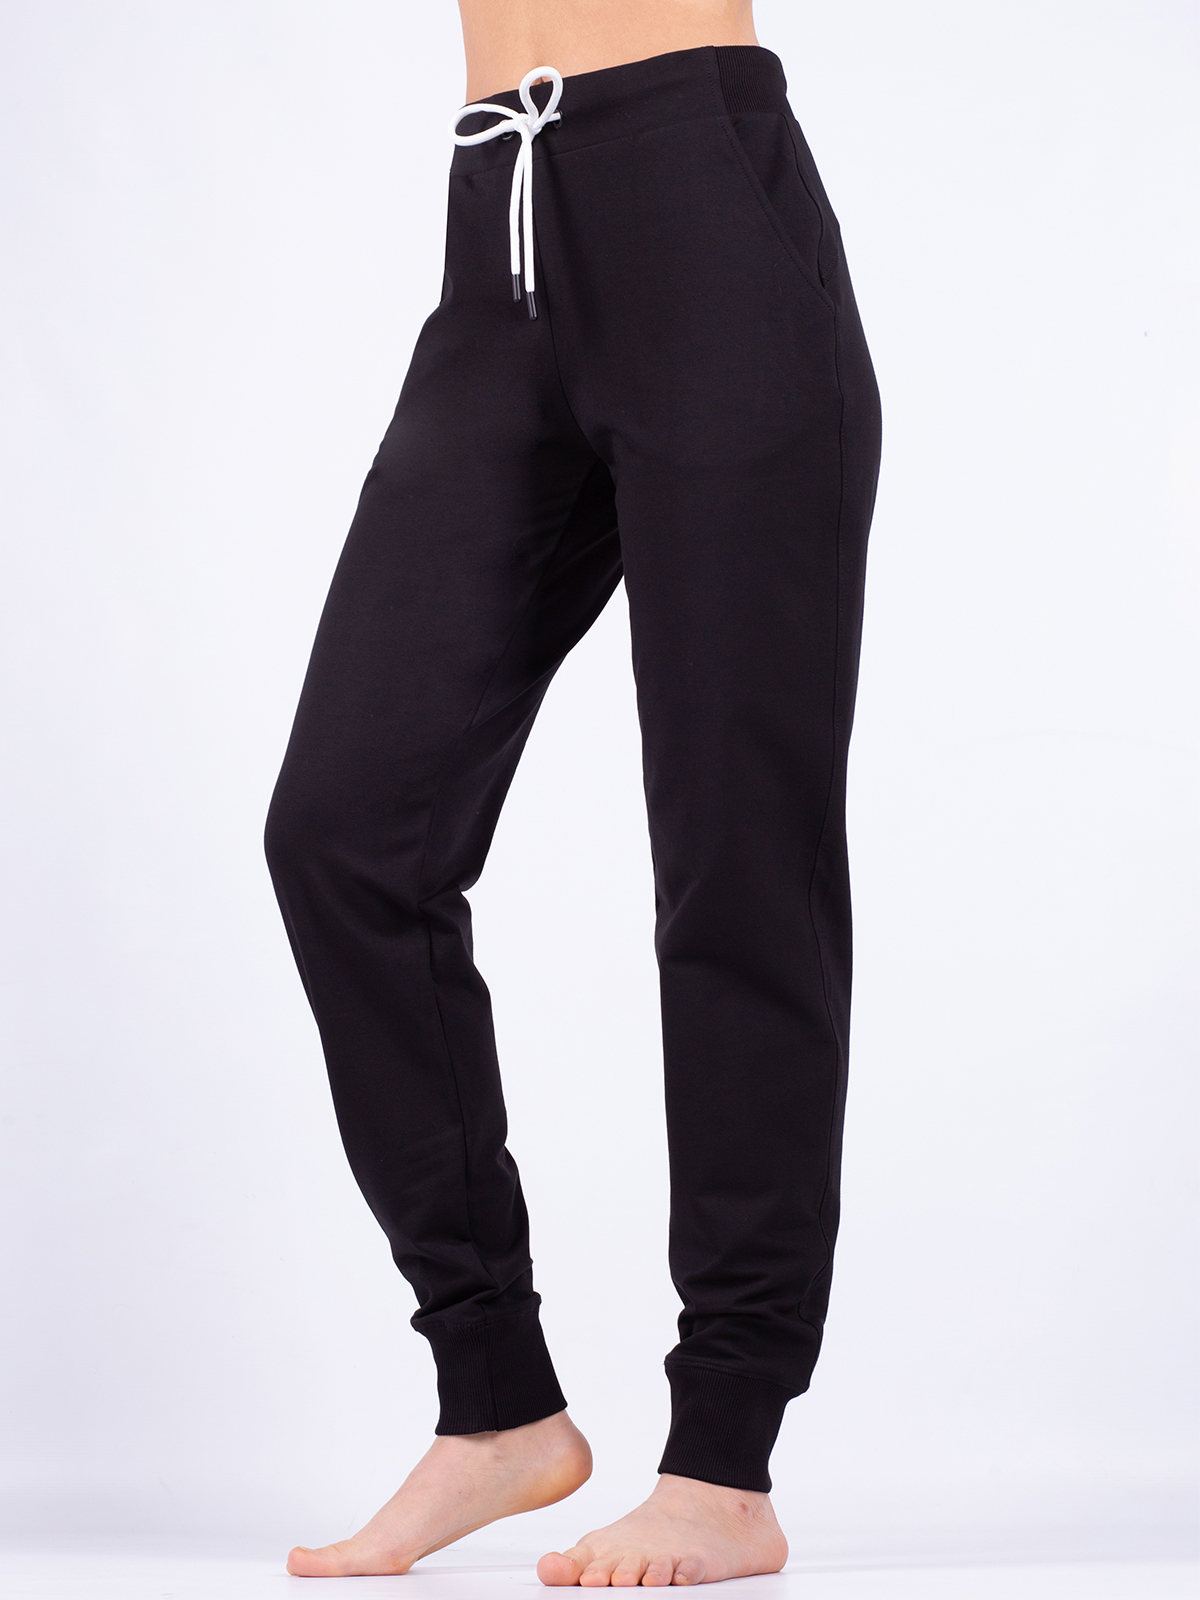 Спортивные брюки женские Oxouno OXO 0756 FOOTER 01 черные S